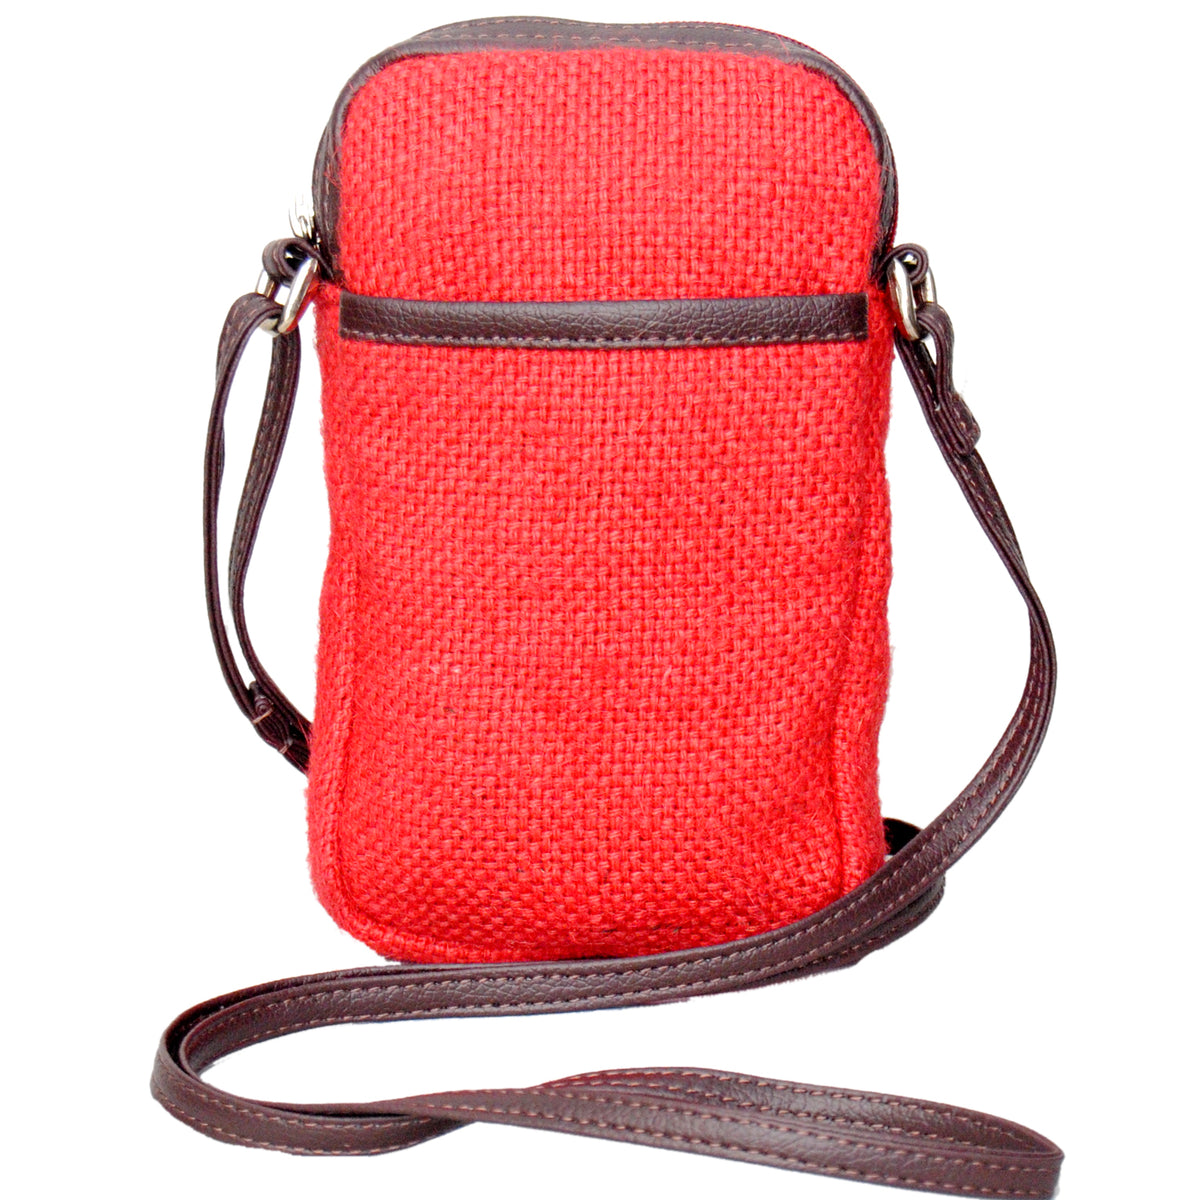 KK1157 Phone Bag Jute - Red